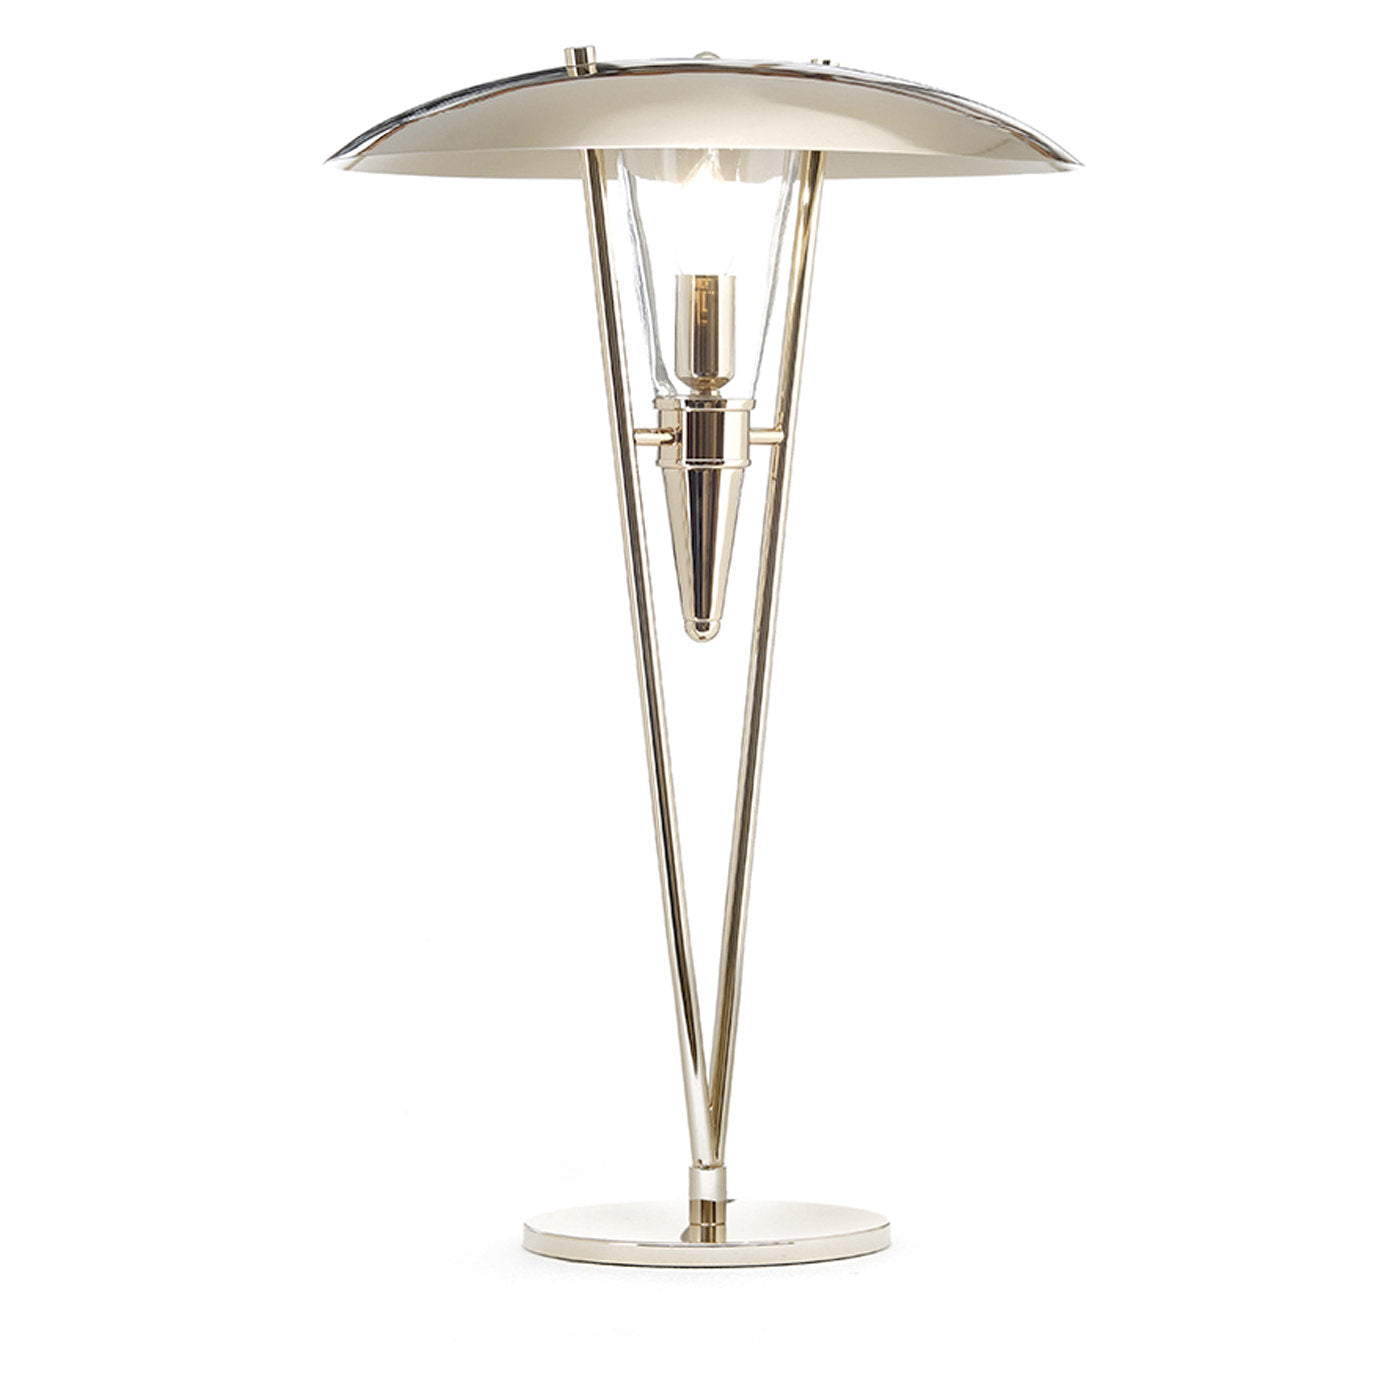 Art Deco Table Lamp - Main view